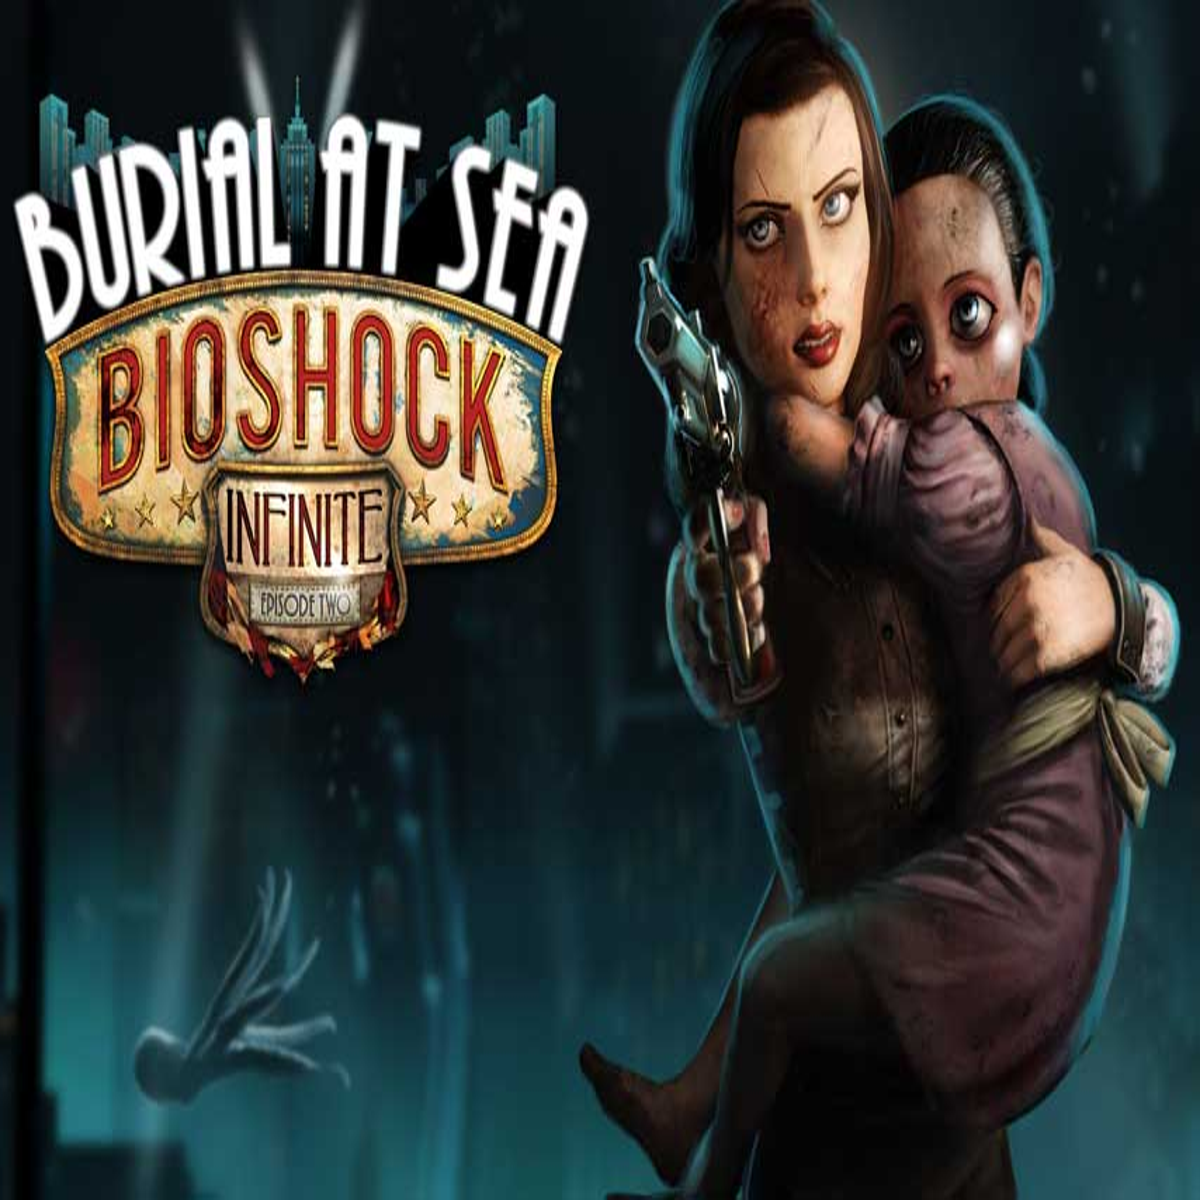 BioShock Infinite: Burial at Sea - Episode 2 (2014)